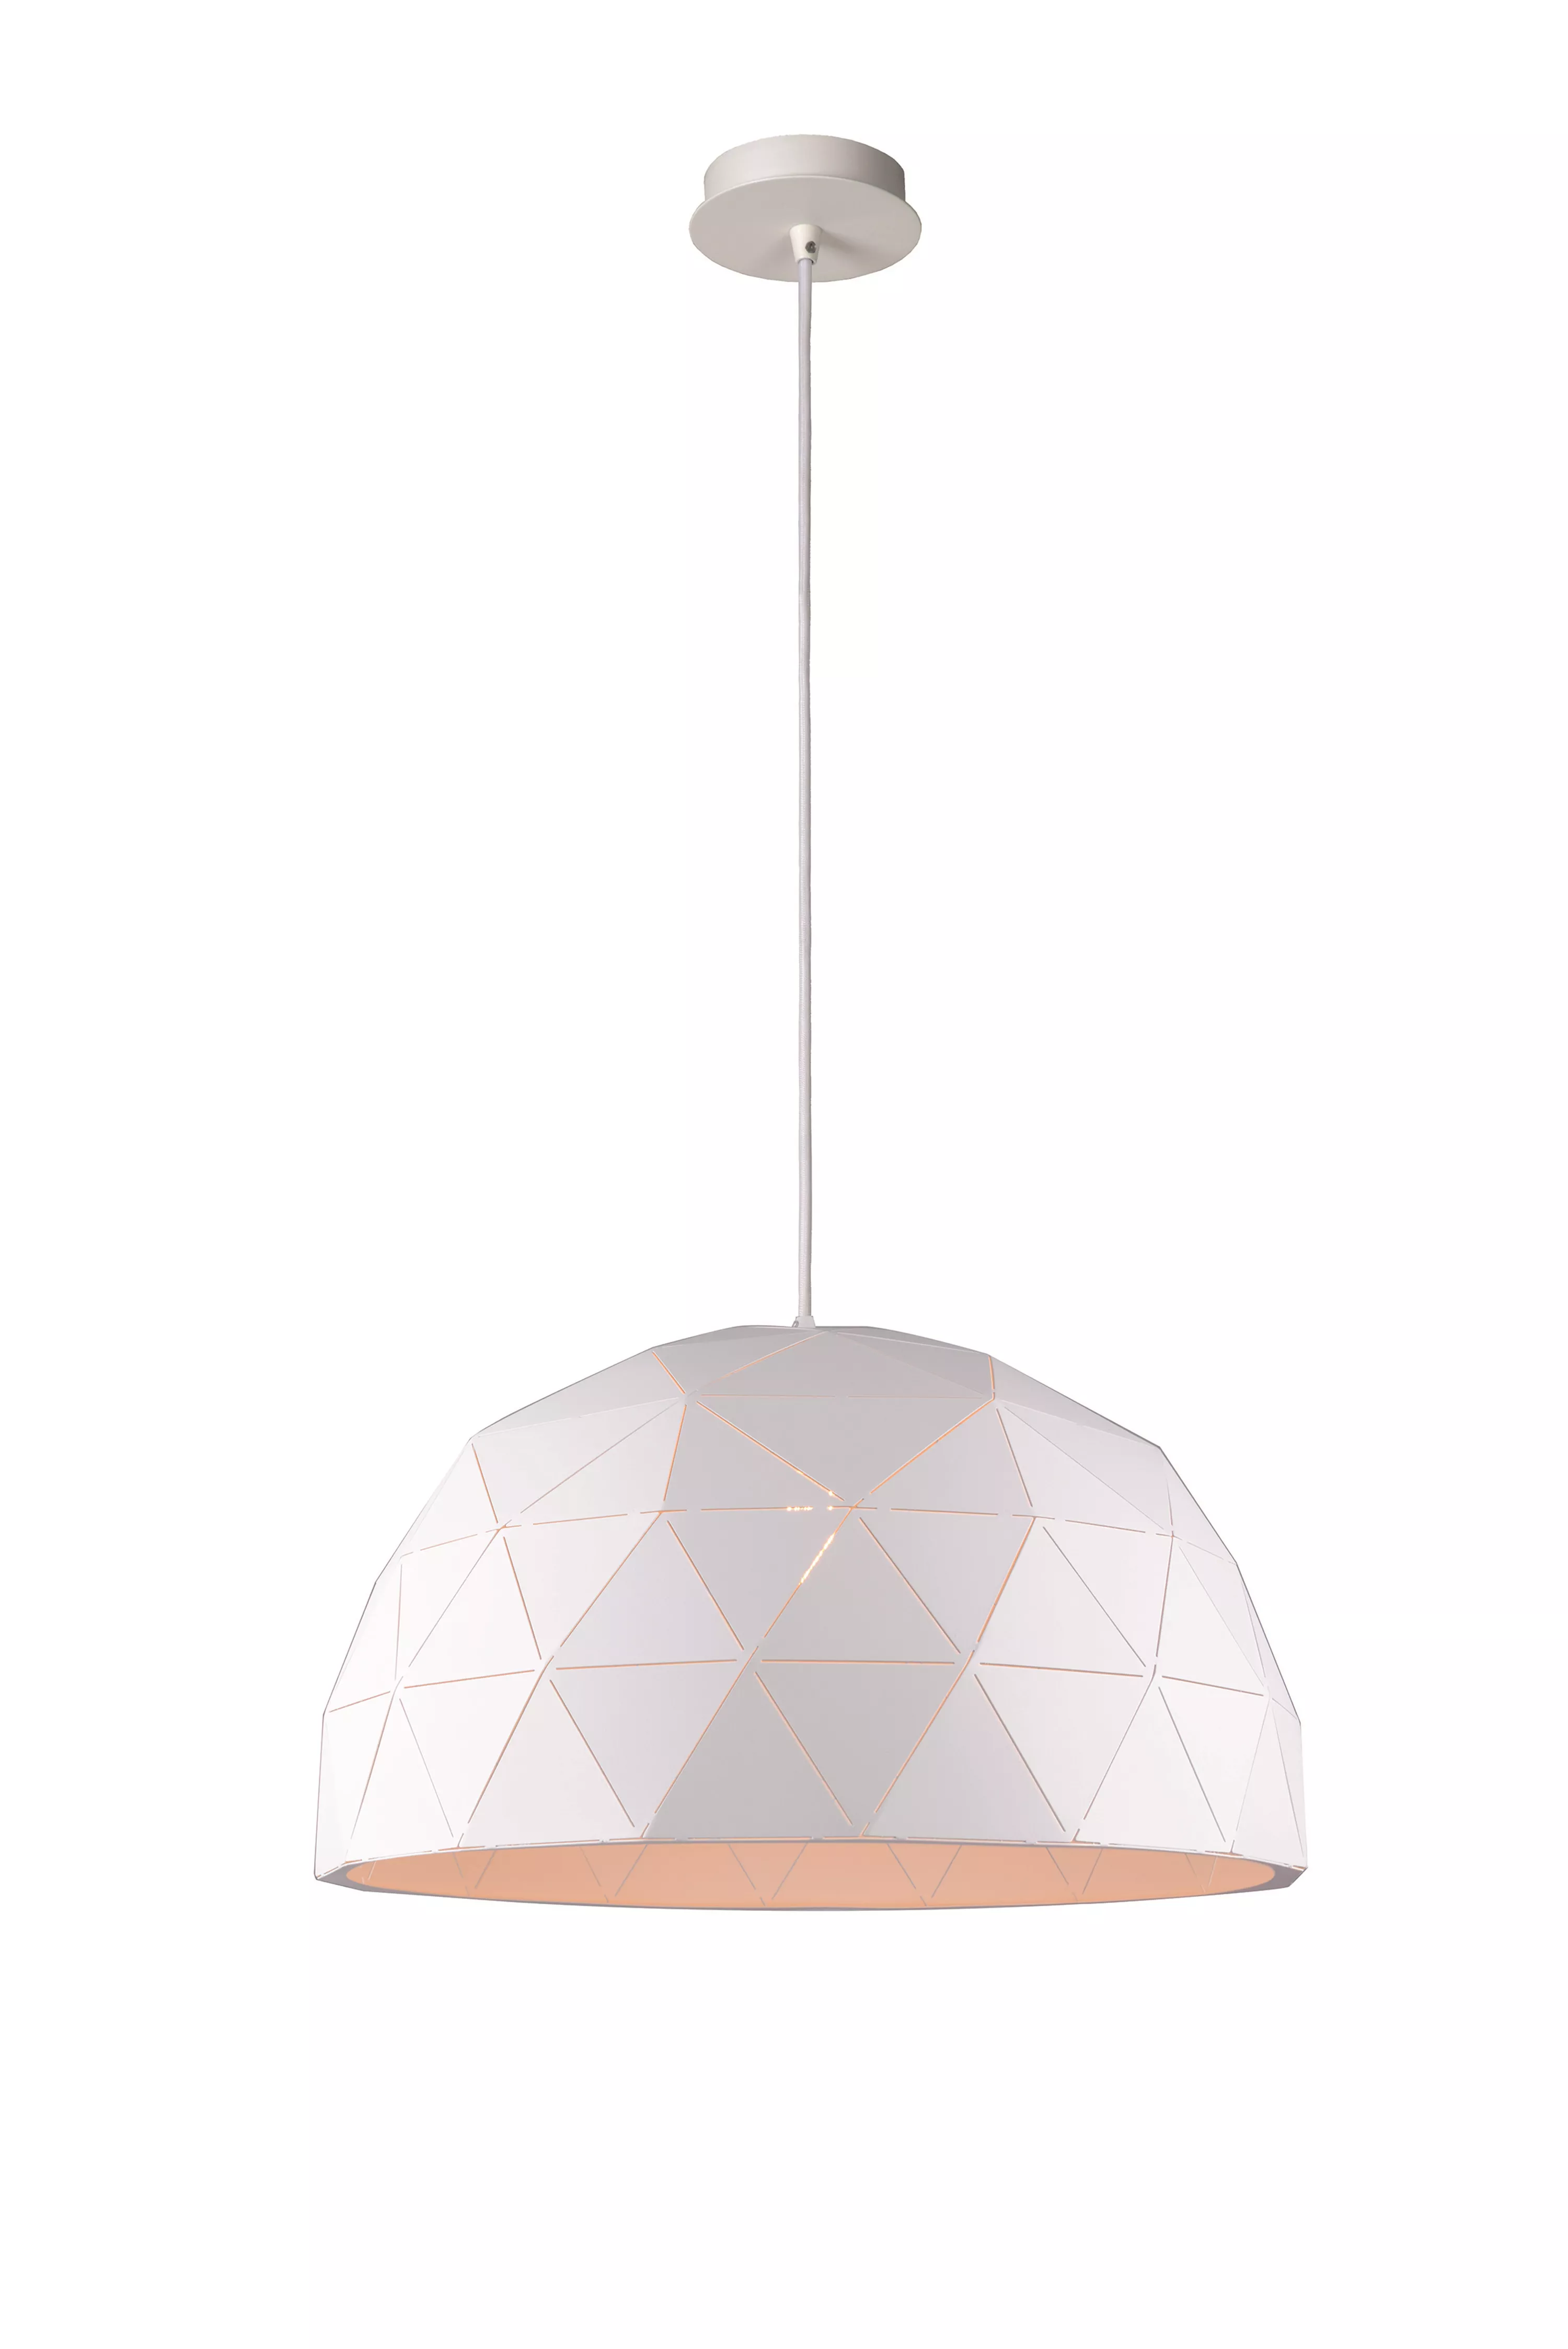 Výrazné závěsné svítidlo v bílé barvě s trojúhelníkovými perforacemi se hodí nad jídelní stůl nebo do obývacího pokoje.